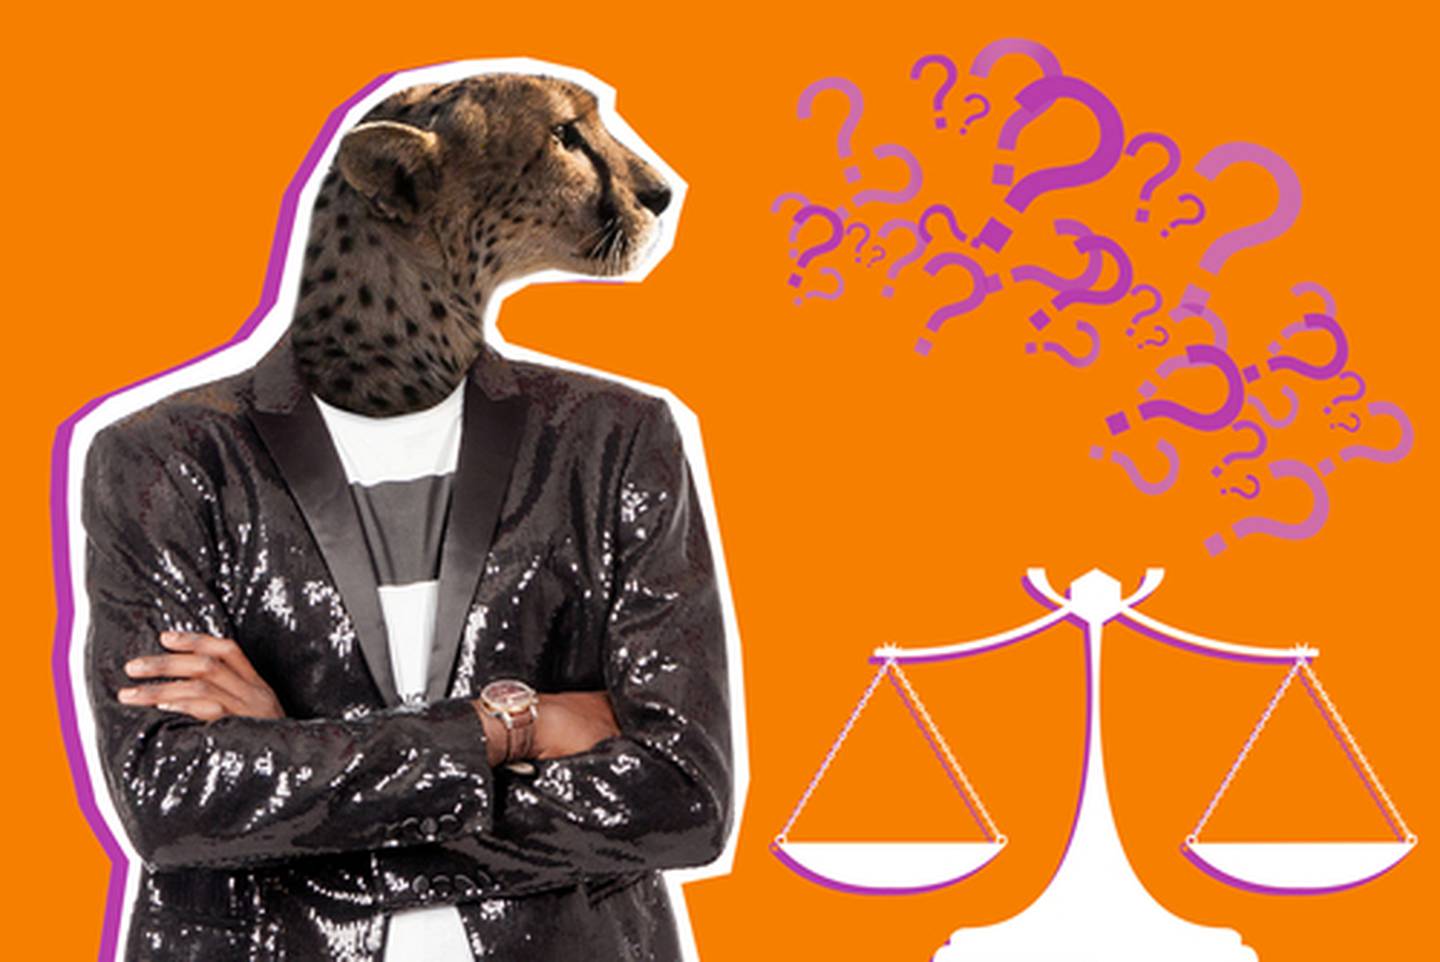 La llamada 'ley jaguar' sería un viraje peligroso, ya que concedería más poder al Ejecutivo.